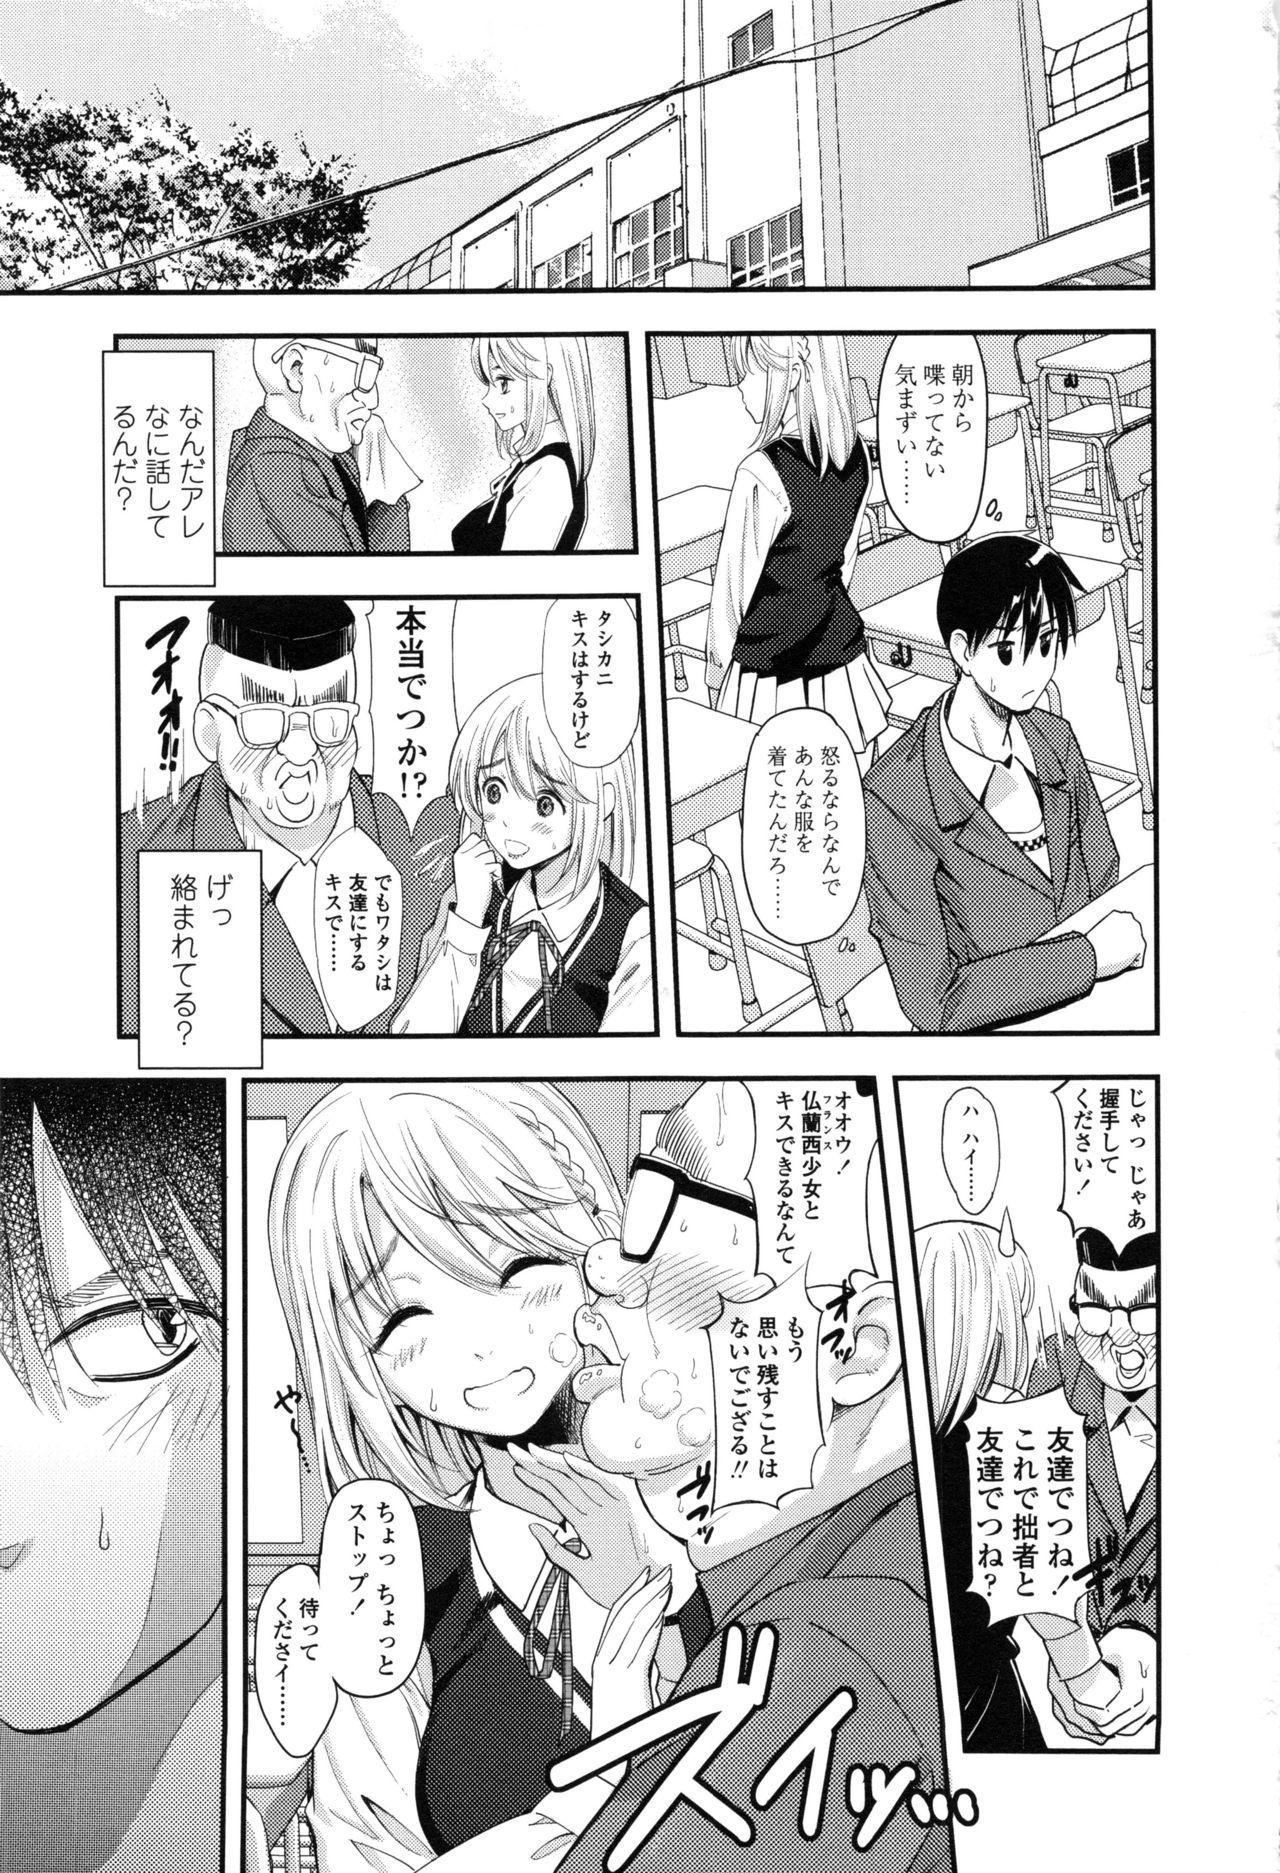 Seifuku no Mama Aishinasai! - Love in school uniform 132